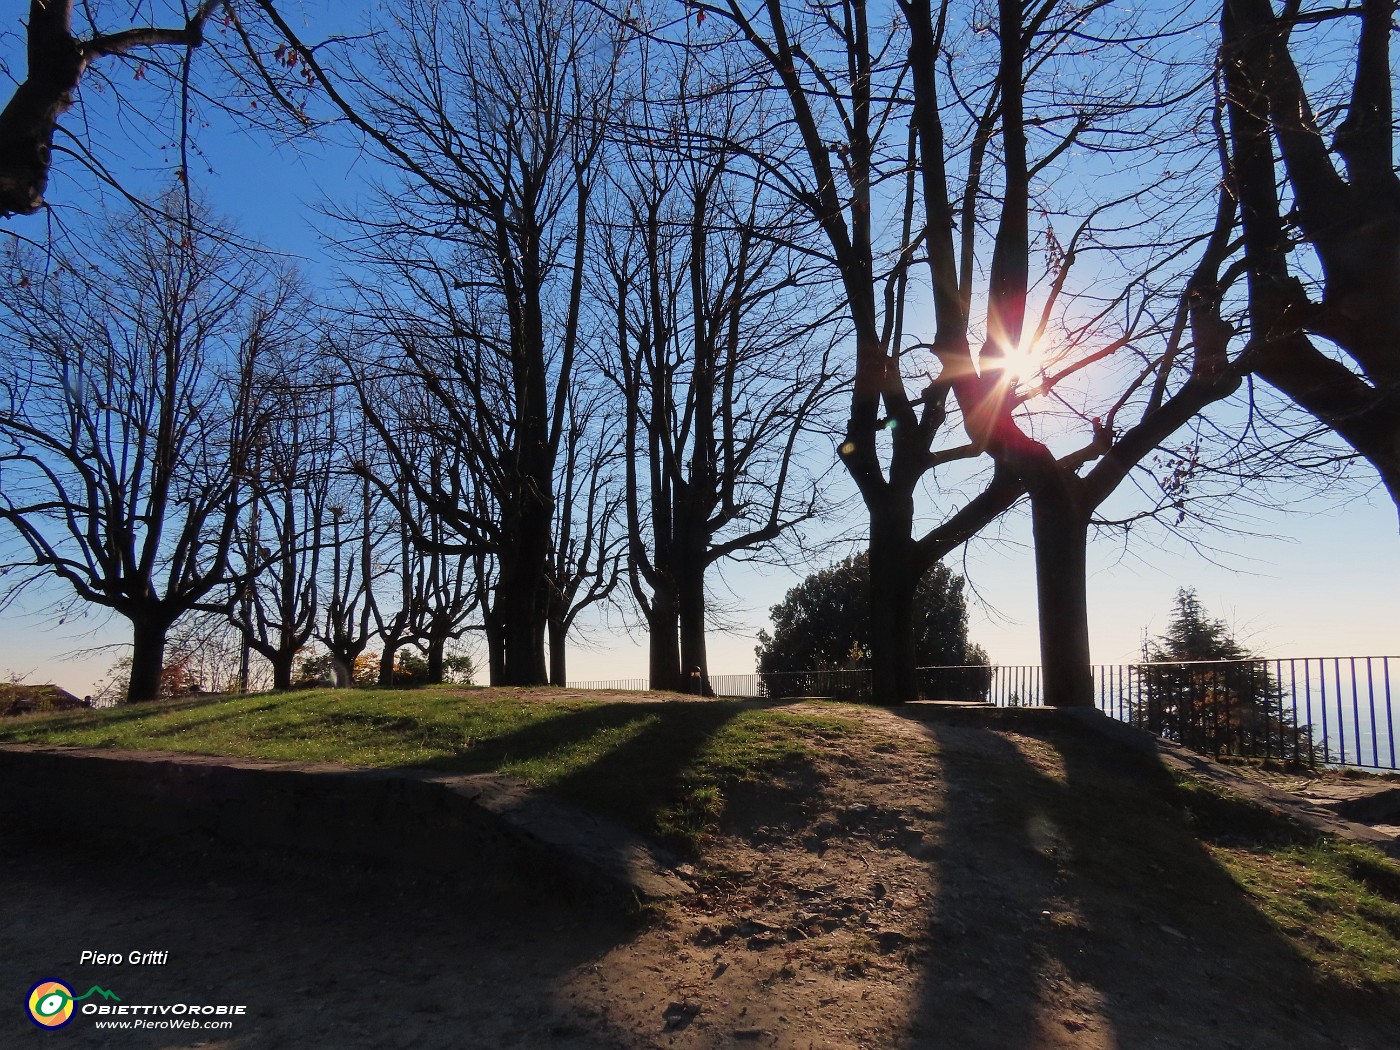 03 Al Parco del Castello di San Viglio baciato dal sole.JPG